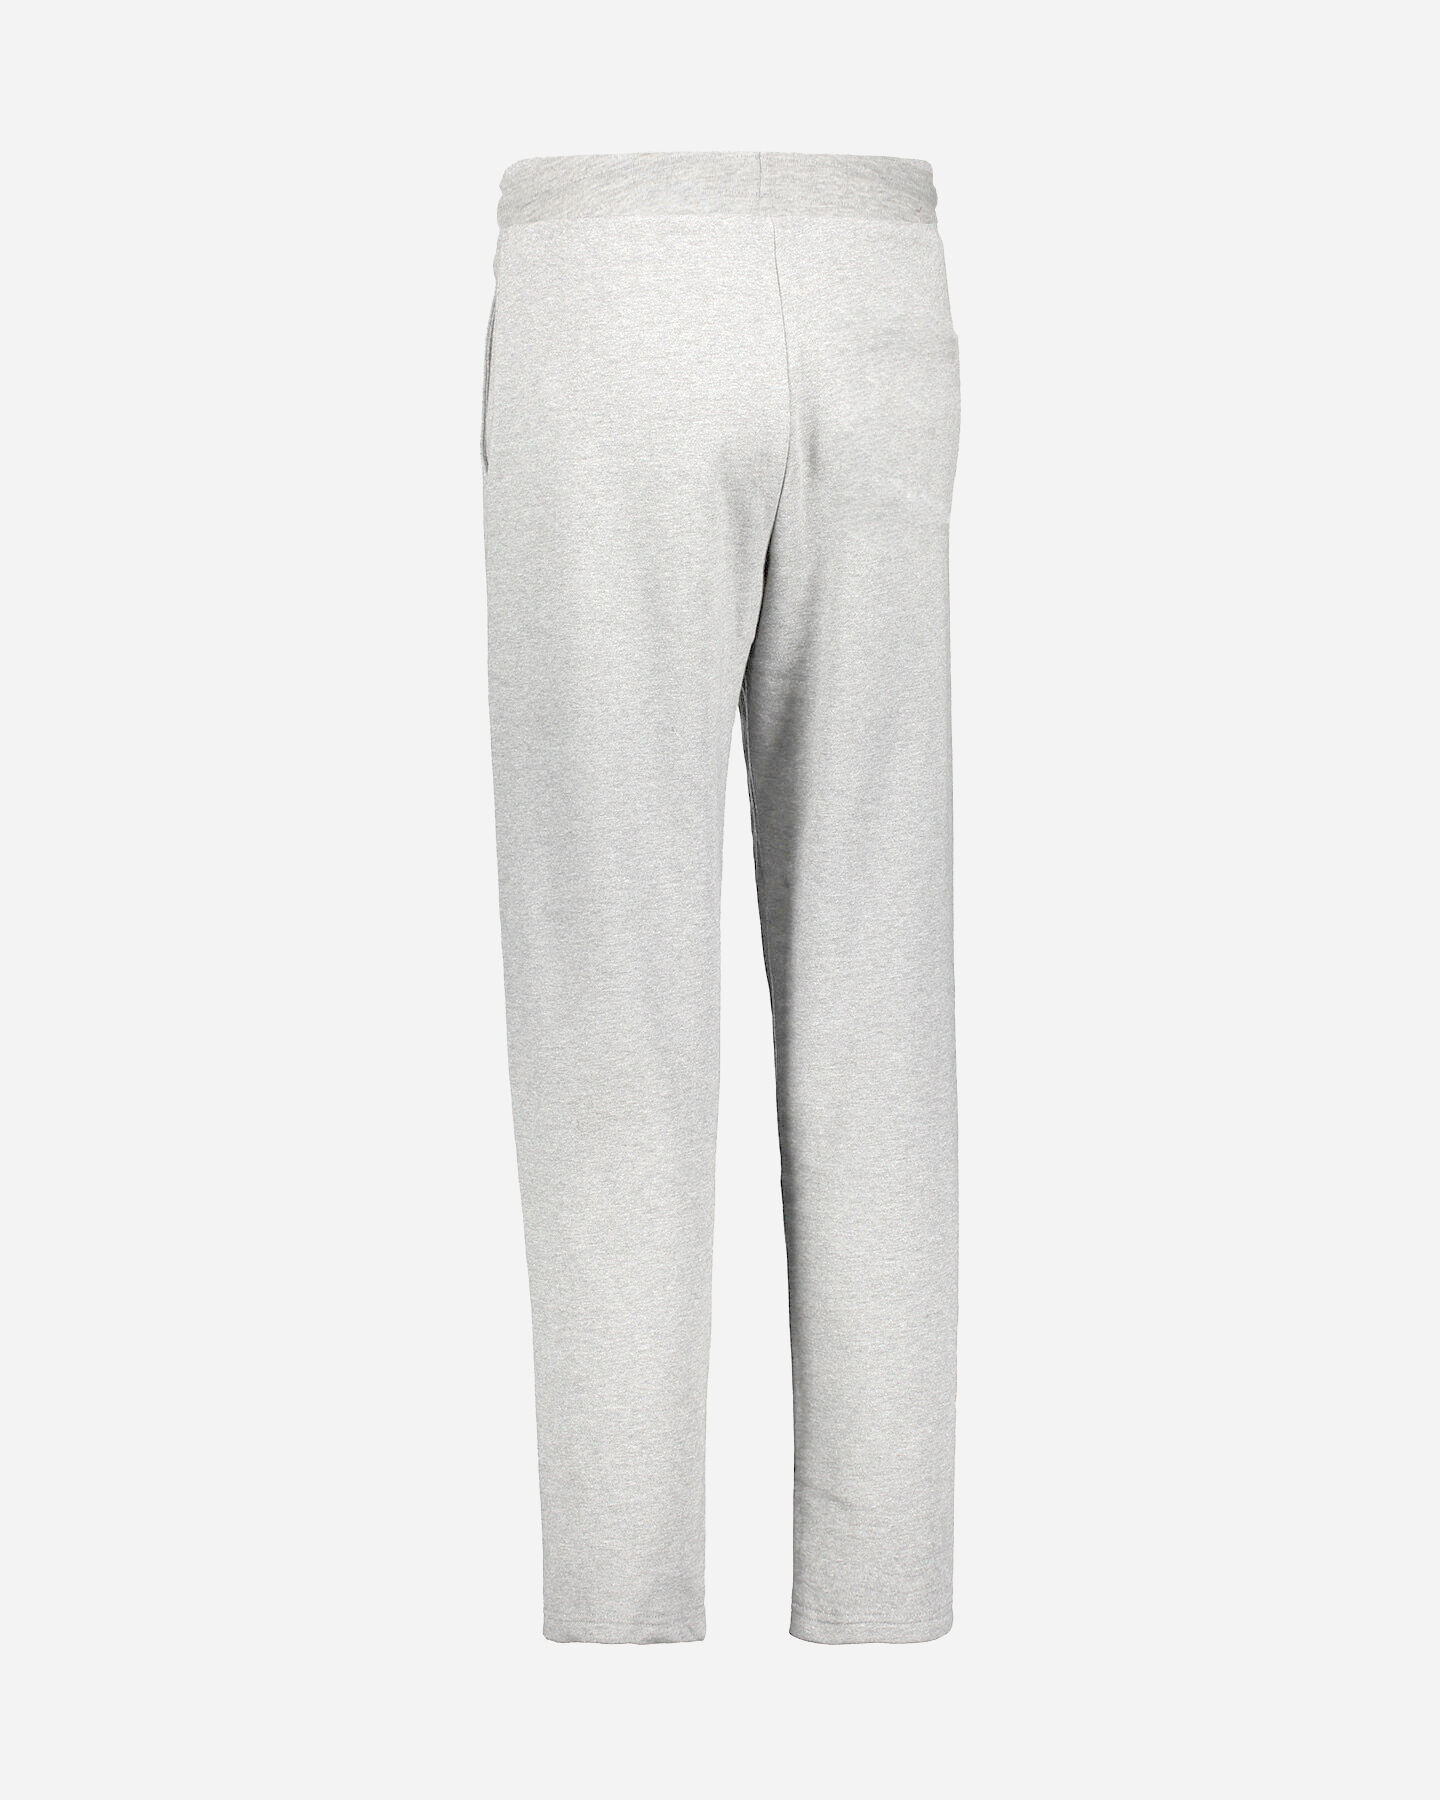  Pantalone ARENA SMALL LOGO M S4074620|GM03|S scatto 5